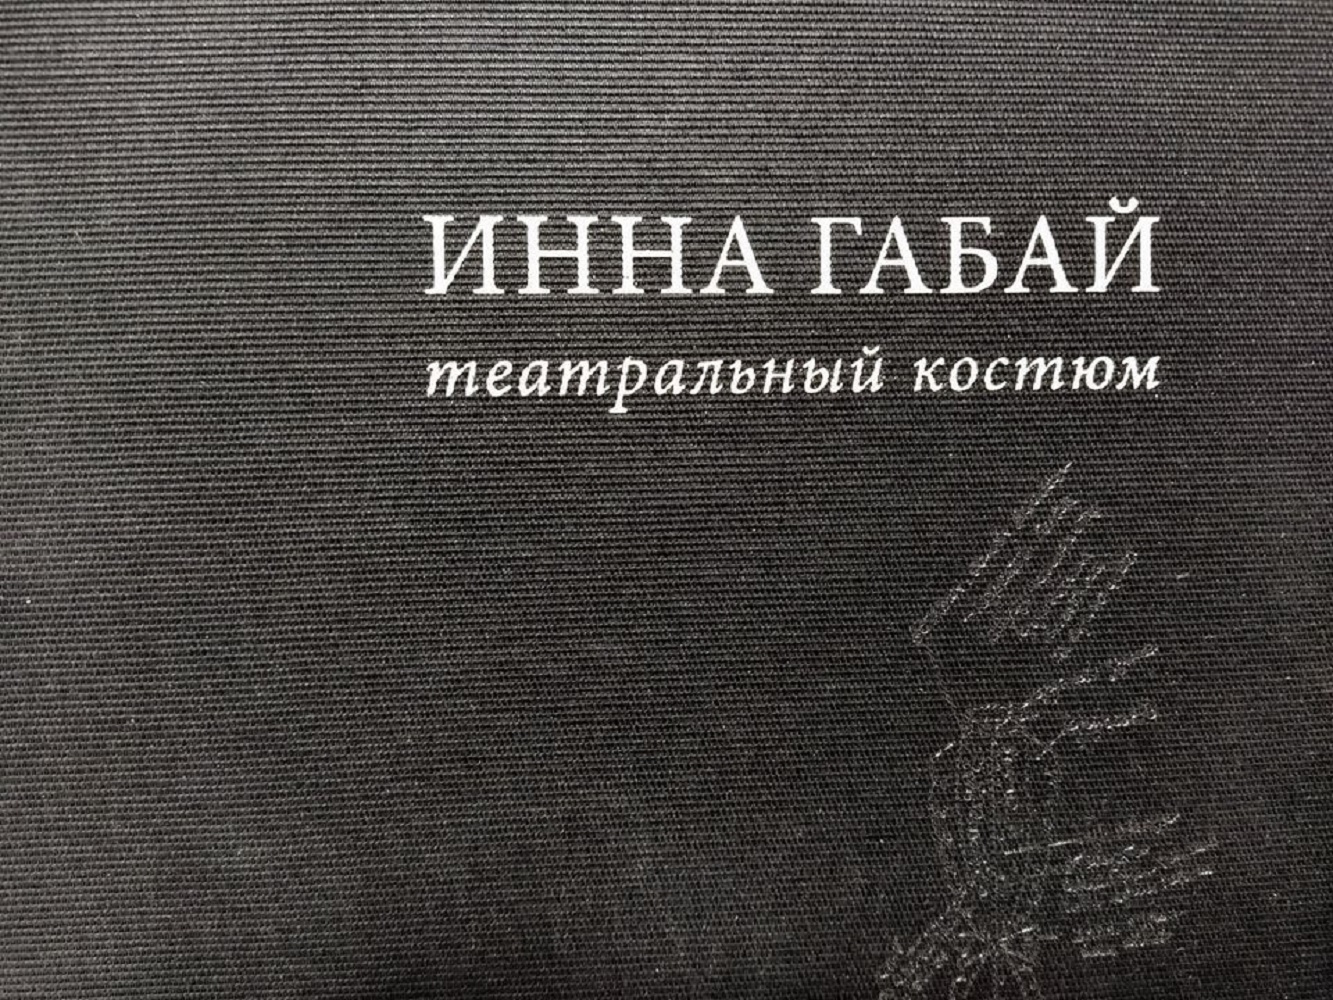 Обложка новой книги © РГБИ